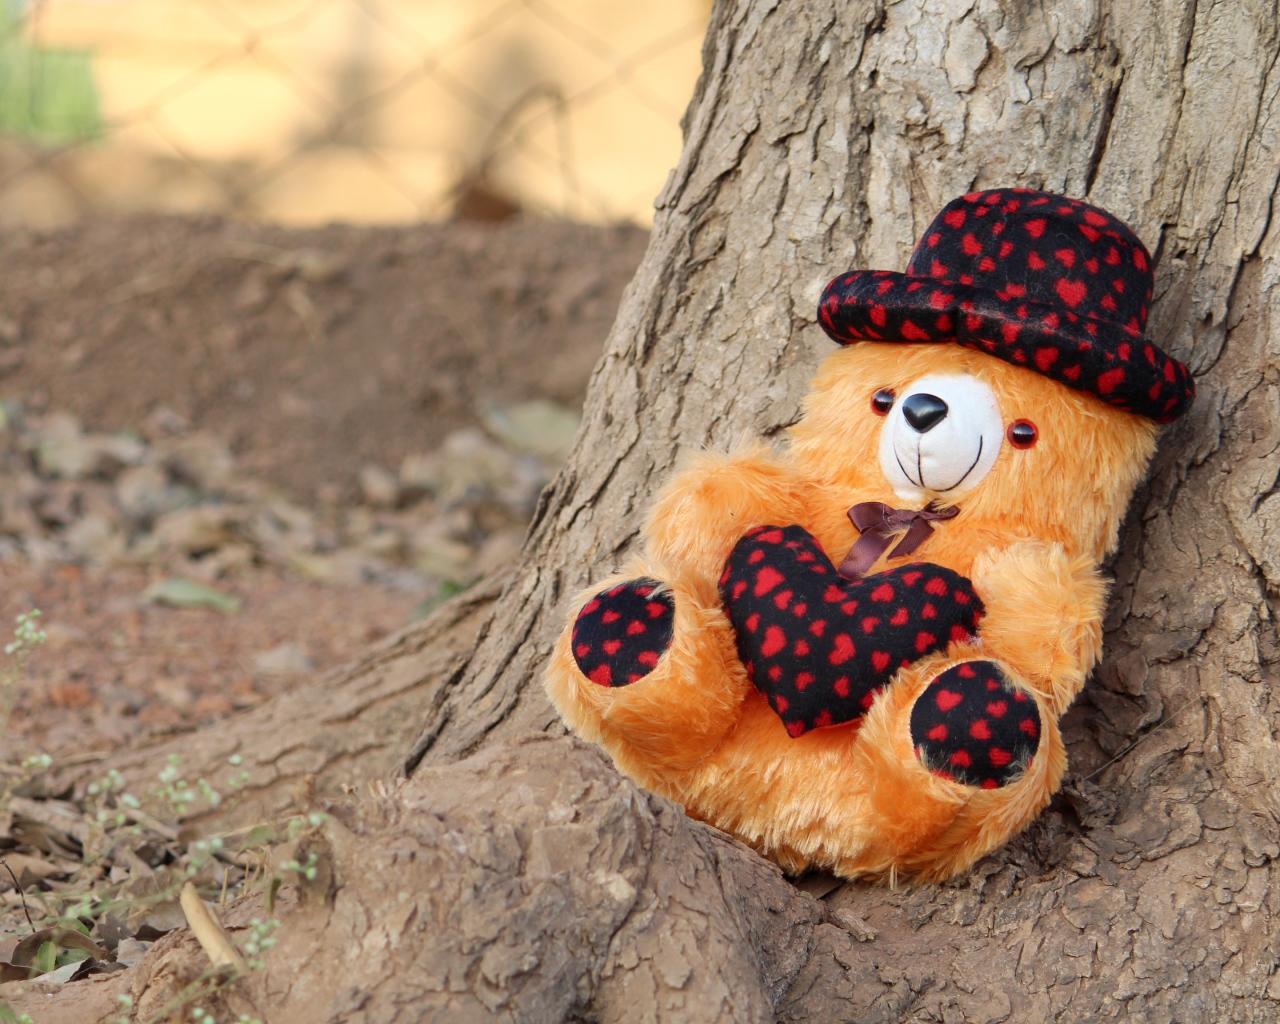 Медвежонок Тедди лежит под деревом